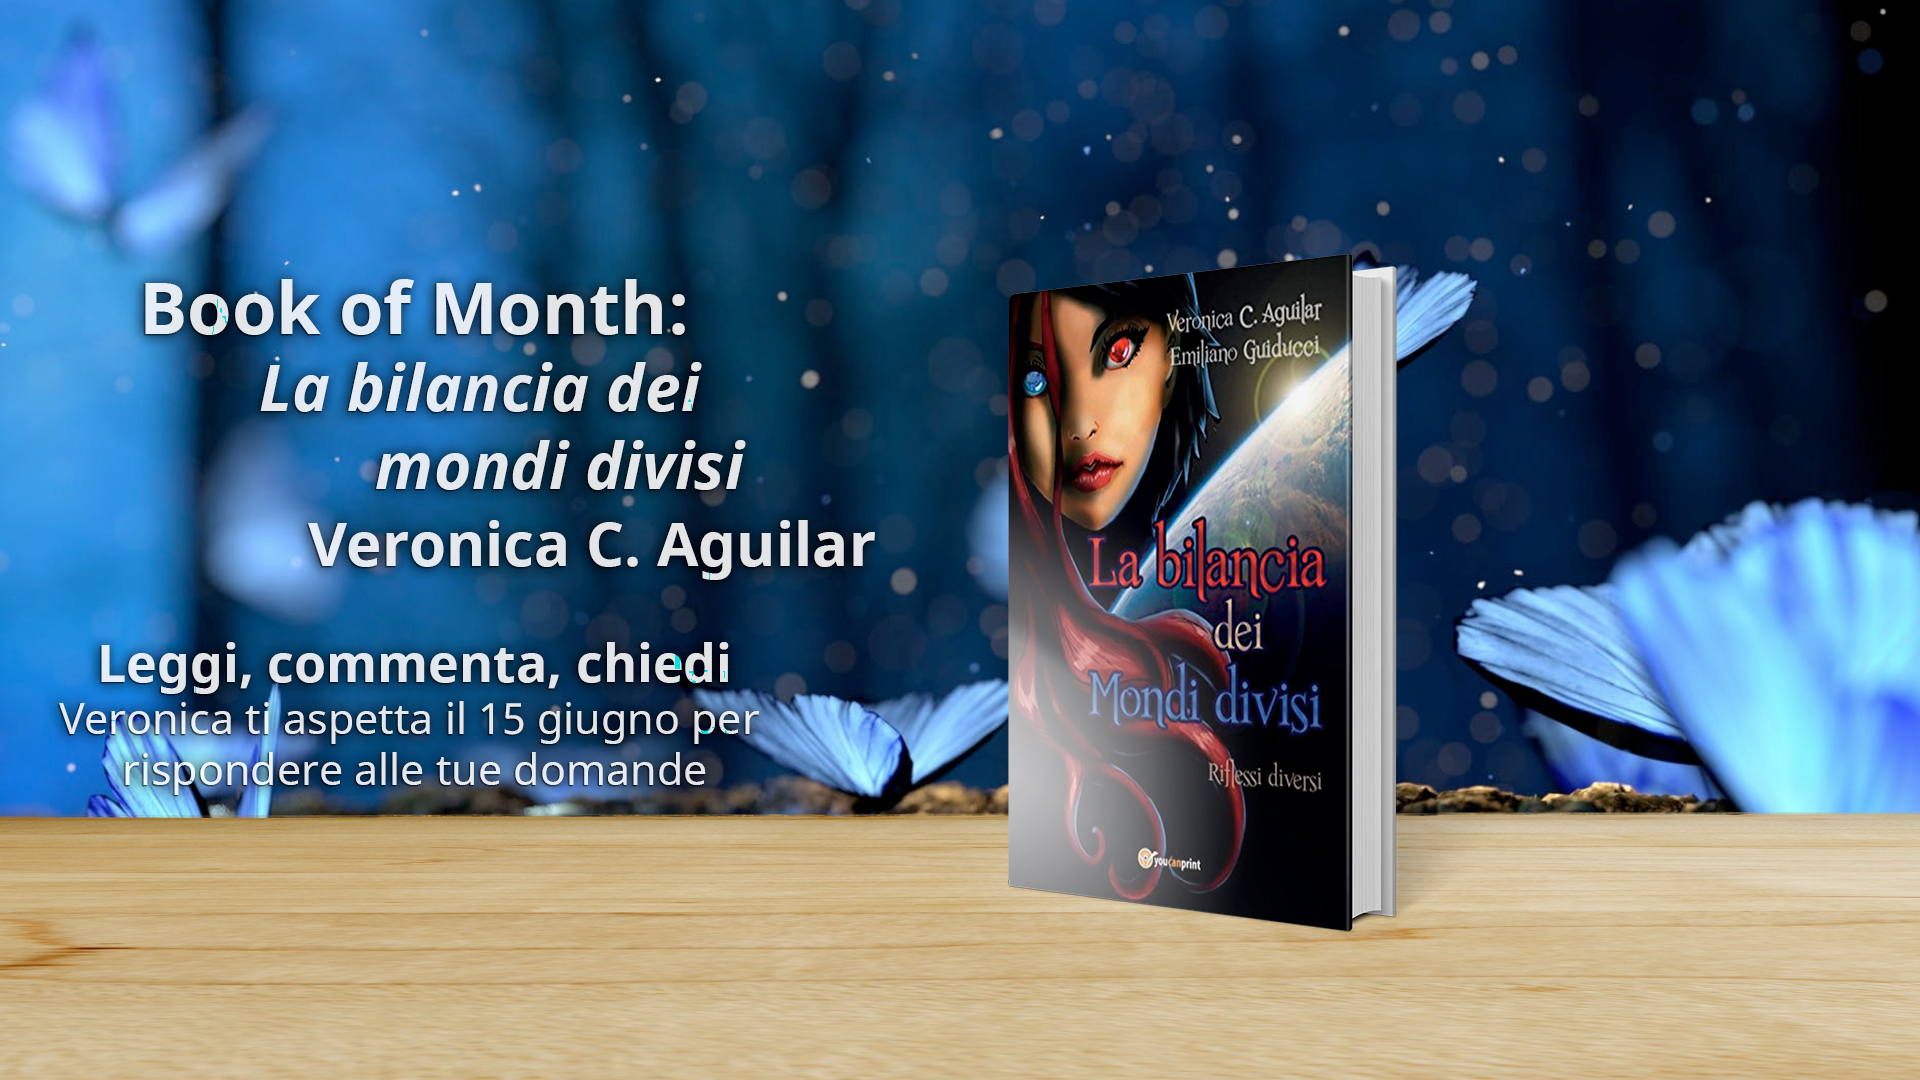 Book of Month: 06/2018 La bilancia dei mondi divisi di Veronica C. Aguilar.